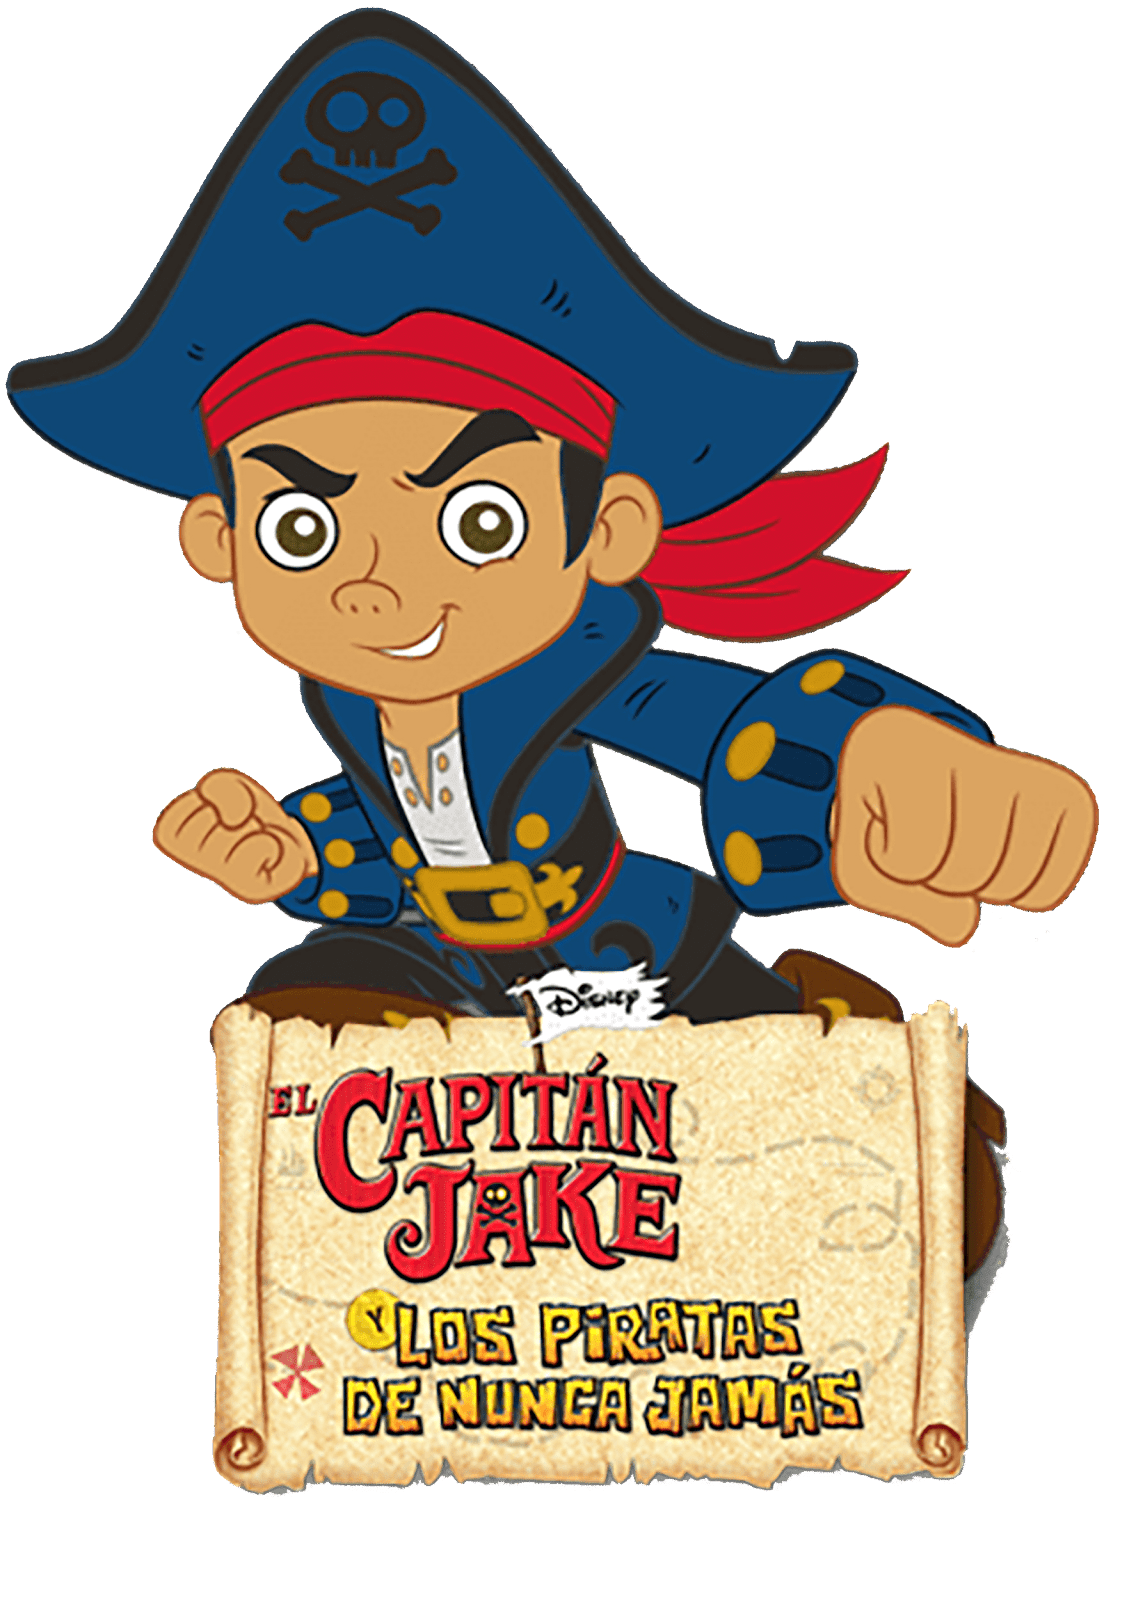 imagen Gigante de los personajes de el capitan jake y los piratas de nunca jamas  en png con fondo transparente